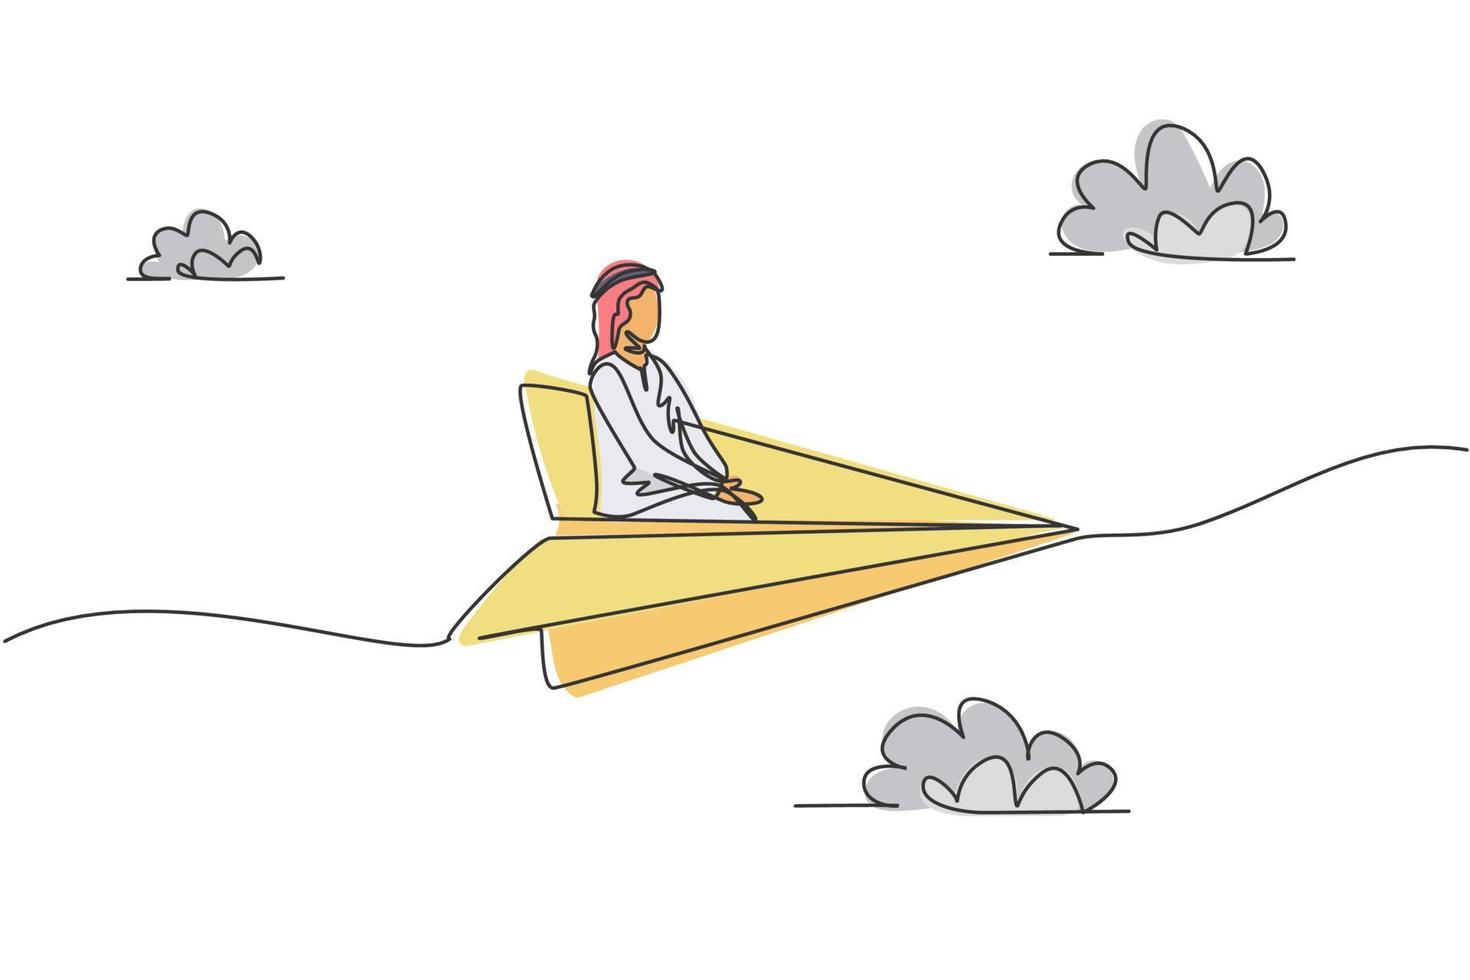 dibujo continuo de una línea de un joven trabajador árabe sentado relajarse en un avión de papel volador. concepto de metáfora minimalista de viaje de negocios de éxito. Ilustración gráfica de vector de diseño de dibujo de una sola línea